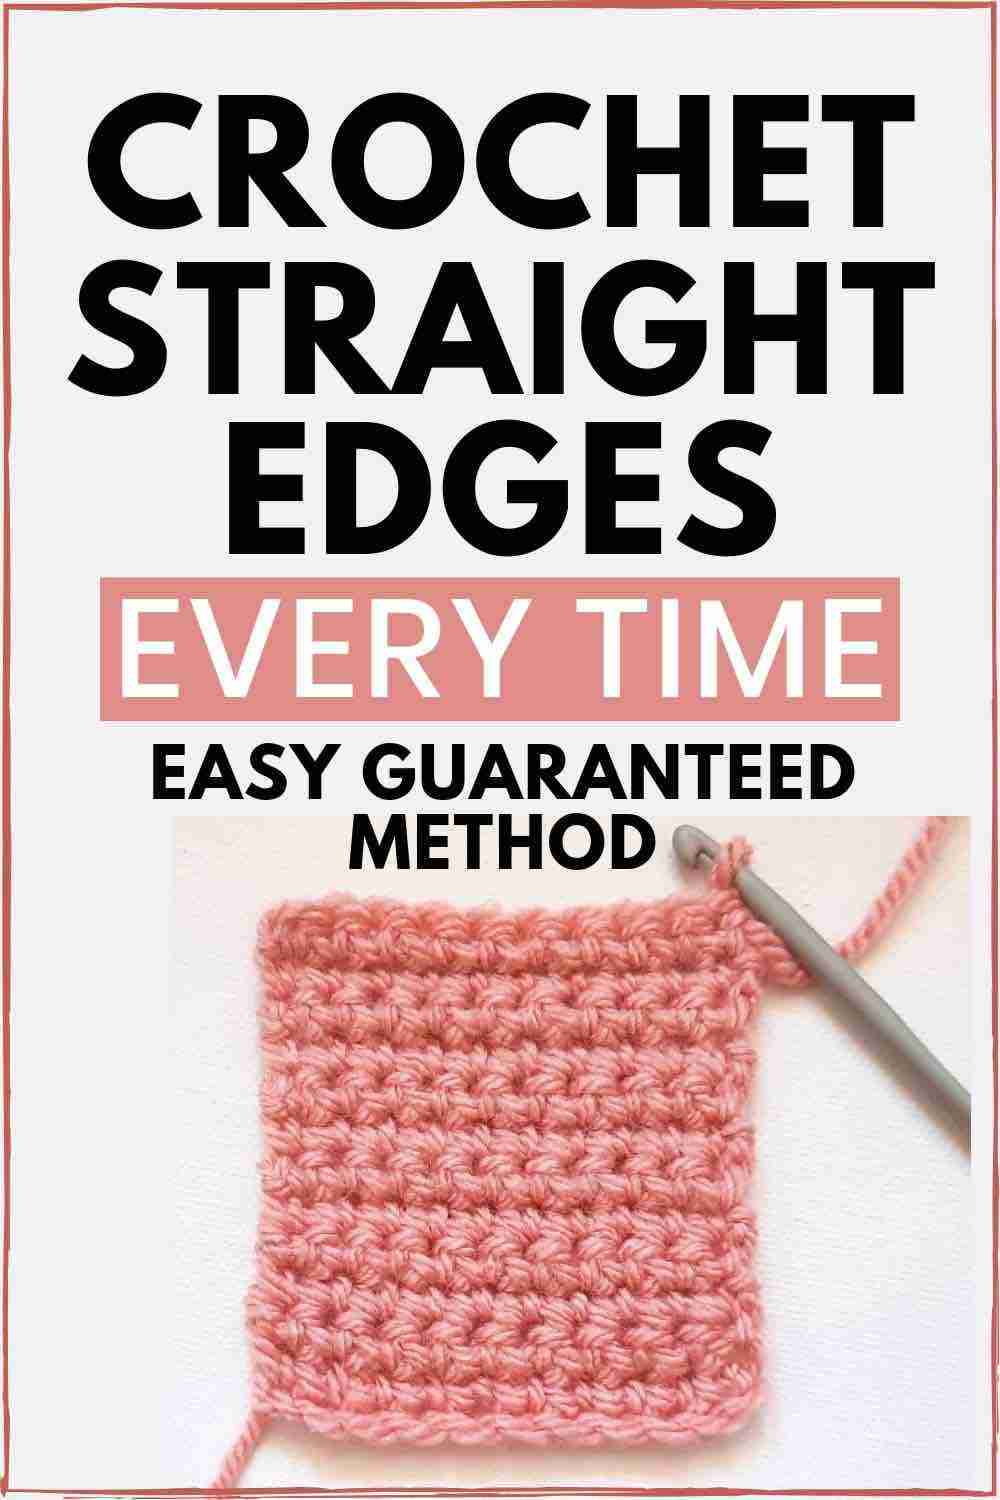 Crochet Straight Edges Every Time - Start Crochet